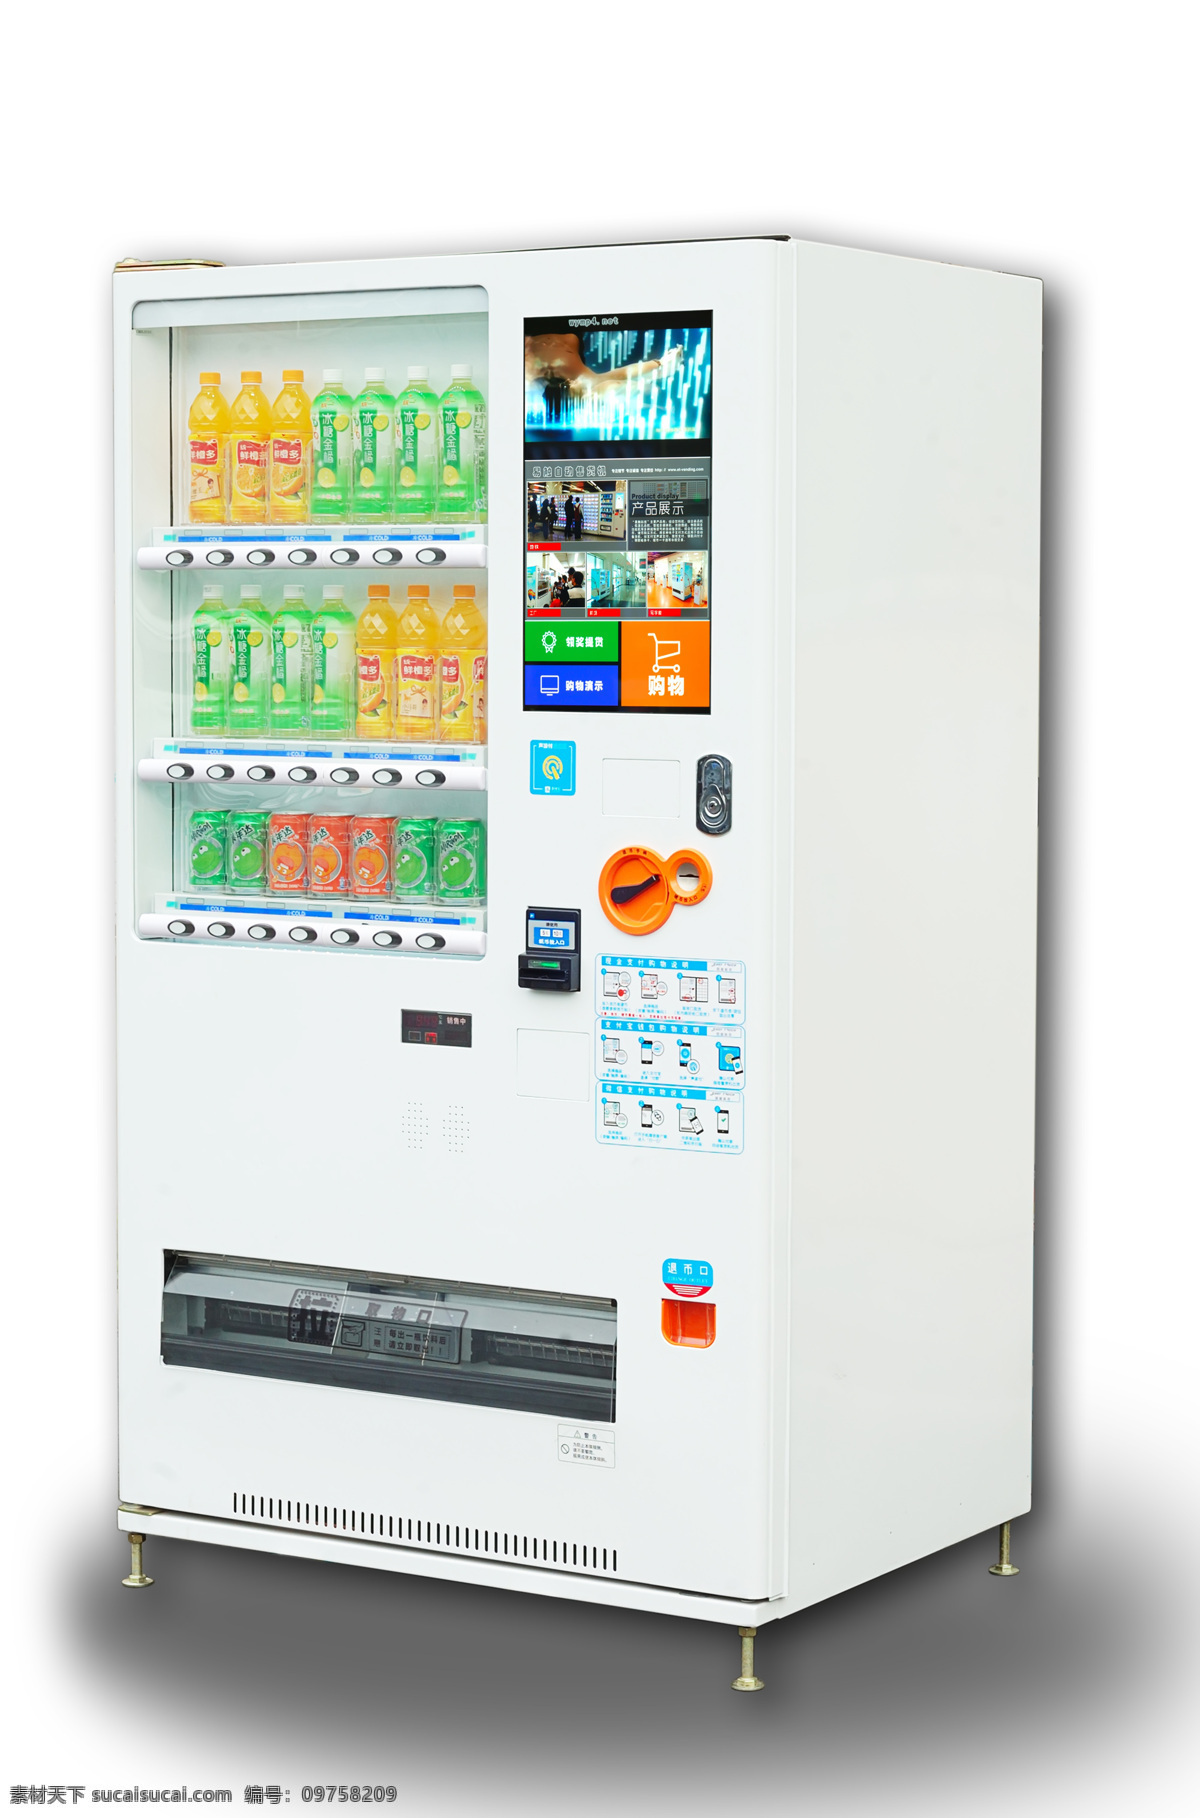 自动售货机 无人售货机 投币饮料机 智能售货机 投币售货机 3d设计